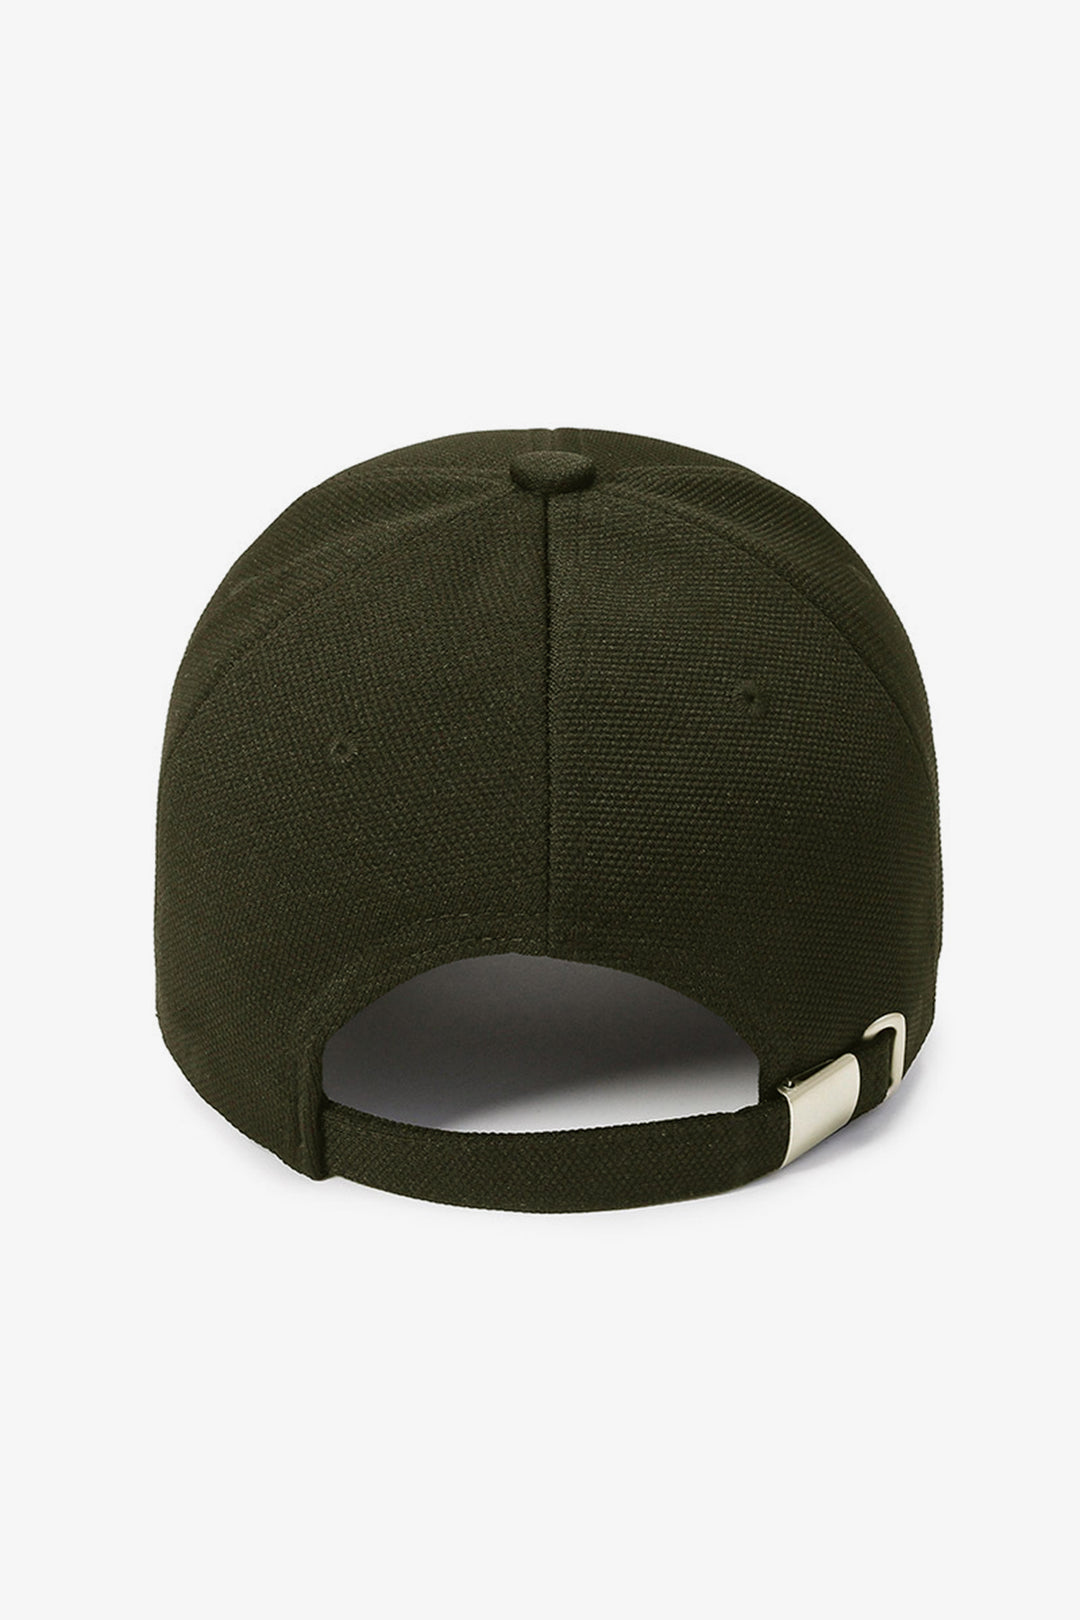 NY Classic Army Green Baseball Cap - S23 - MCP082R